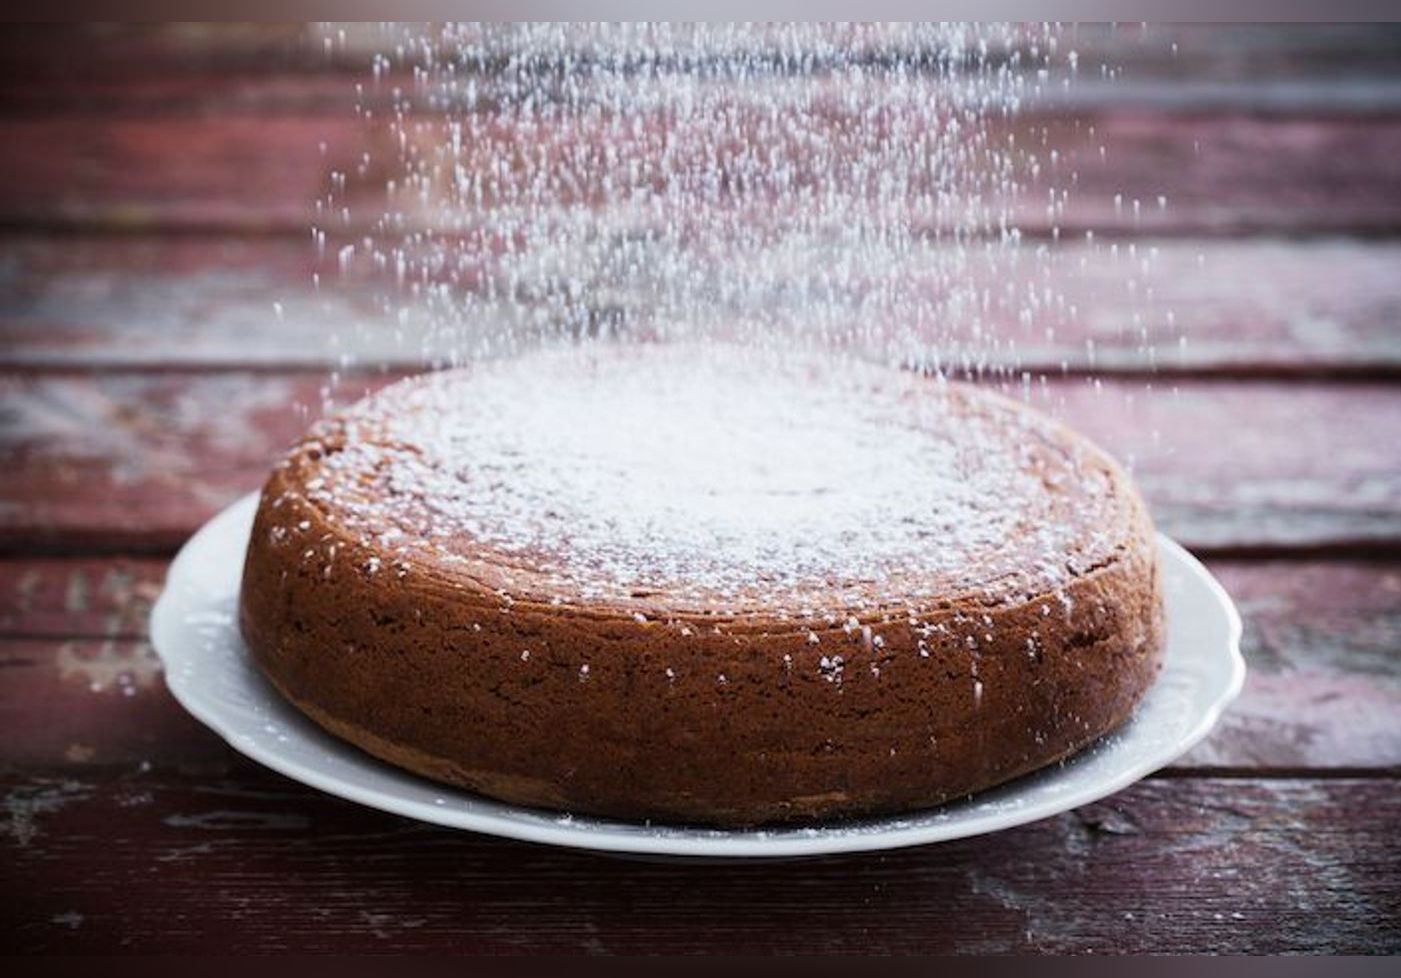 Julie Andrieu révèle une recette de mousseline aux noisettes, un gâteau incroyablement gourmand